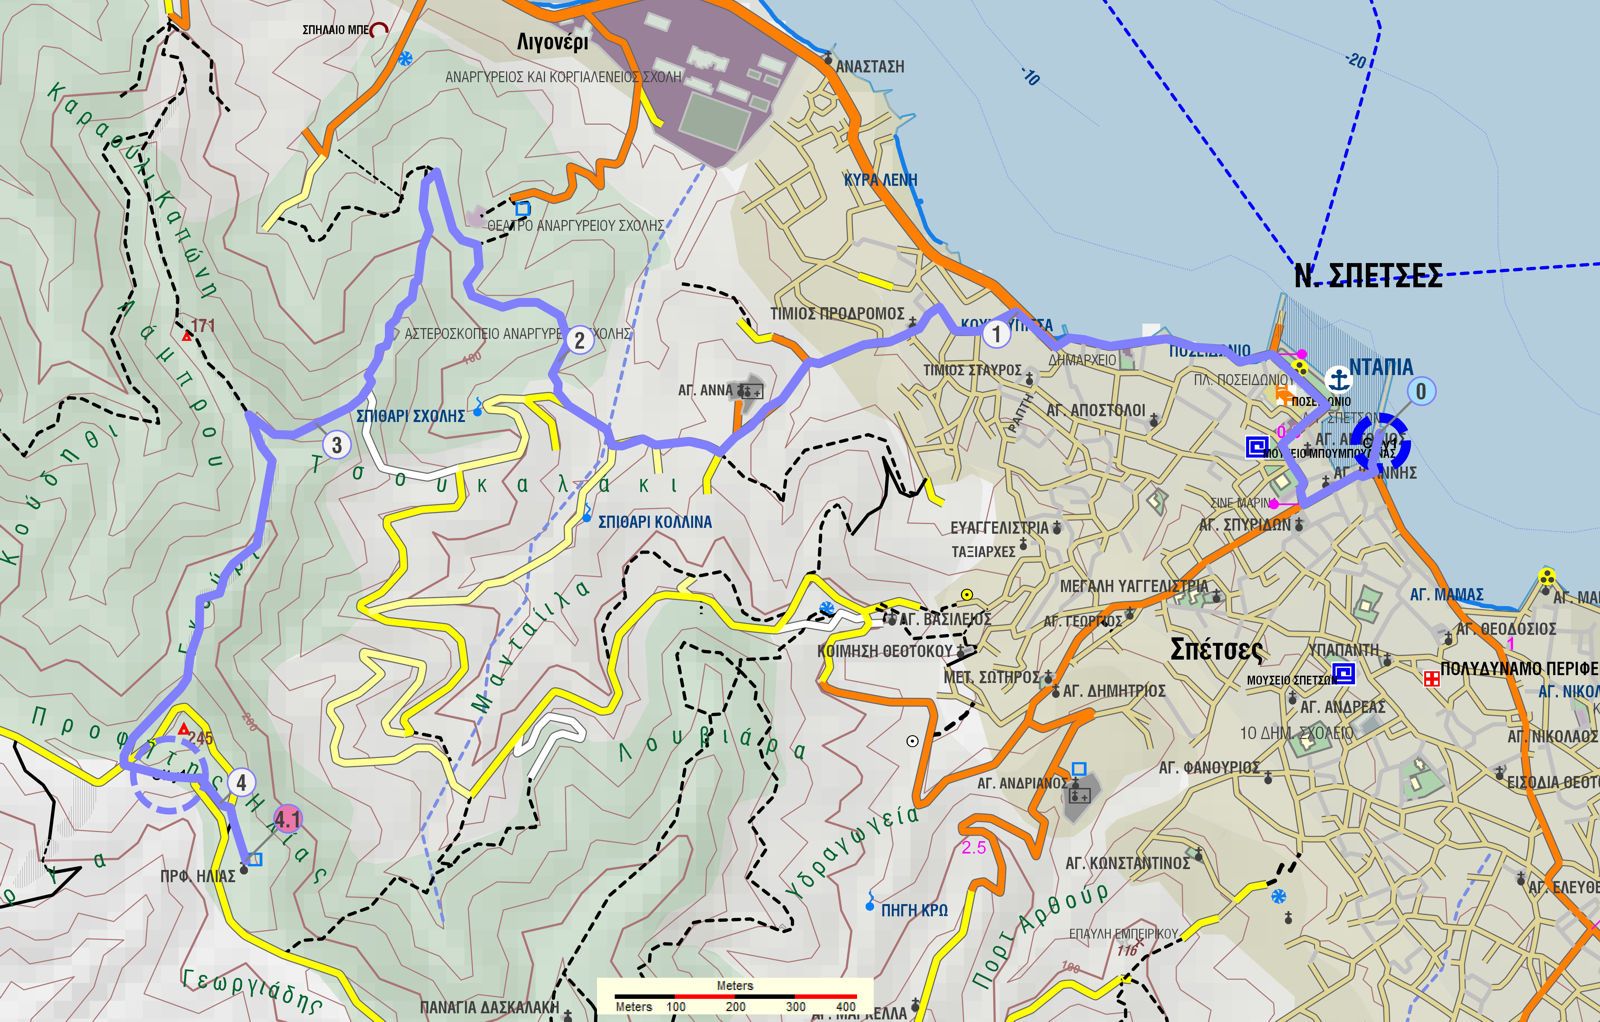 Σπέτσες: Χάρτης της διαδρομής Ντάπια-Αστεροσκοπείο-Προφήτης Ηλίας